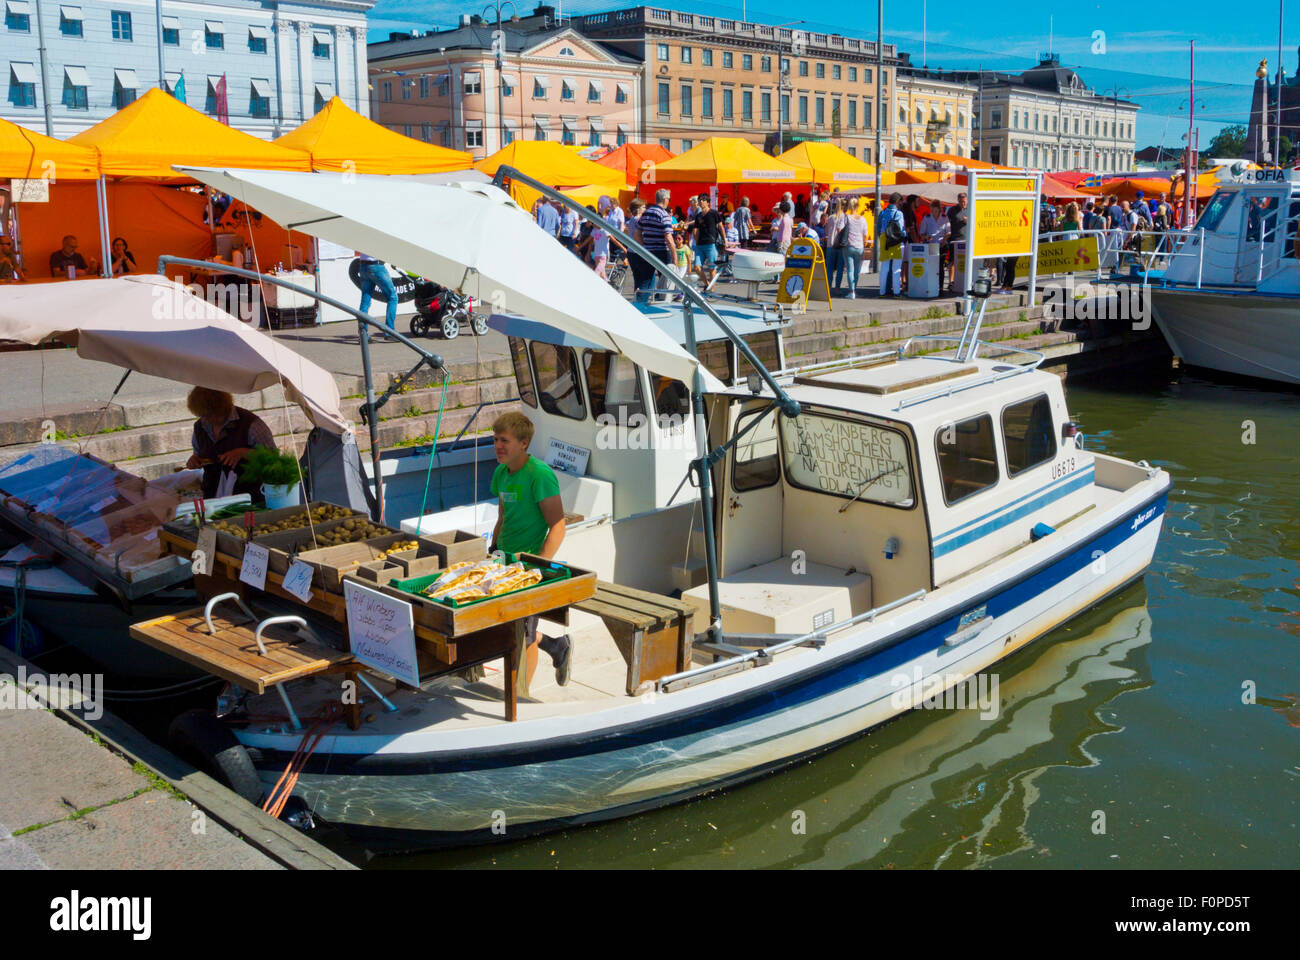 Boats selling fish and potatoes, Kauppatori, market square, Helsinki, Finland, Europe Stock Photo